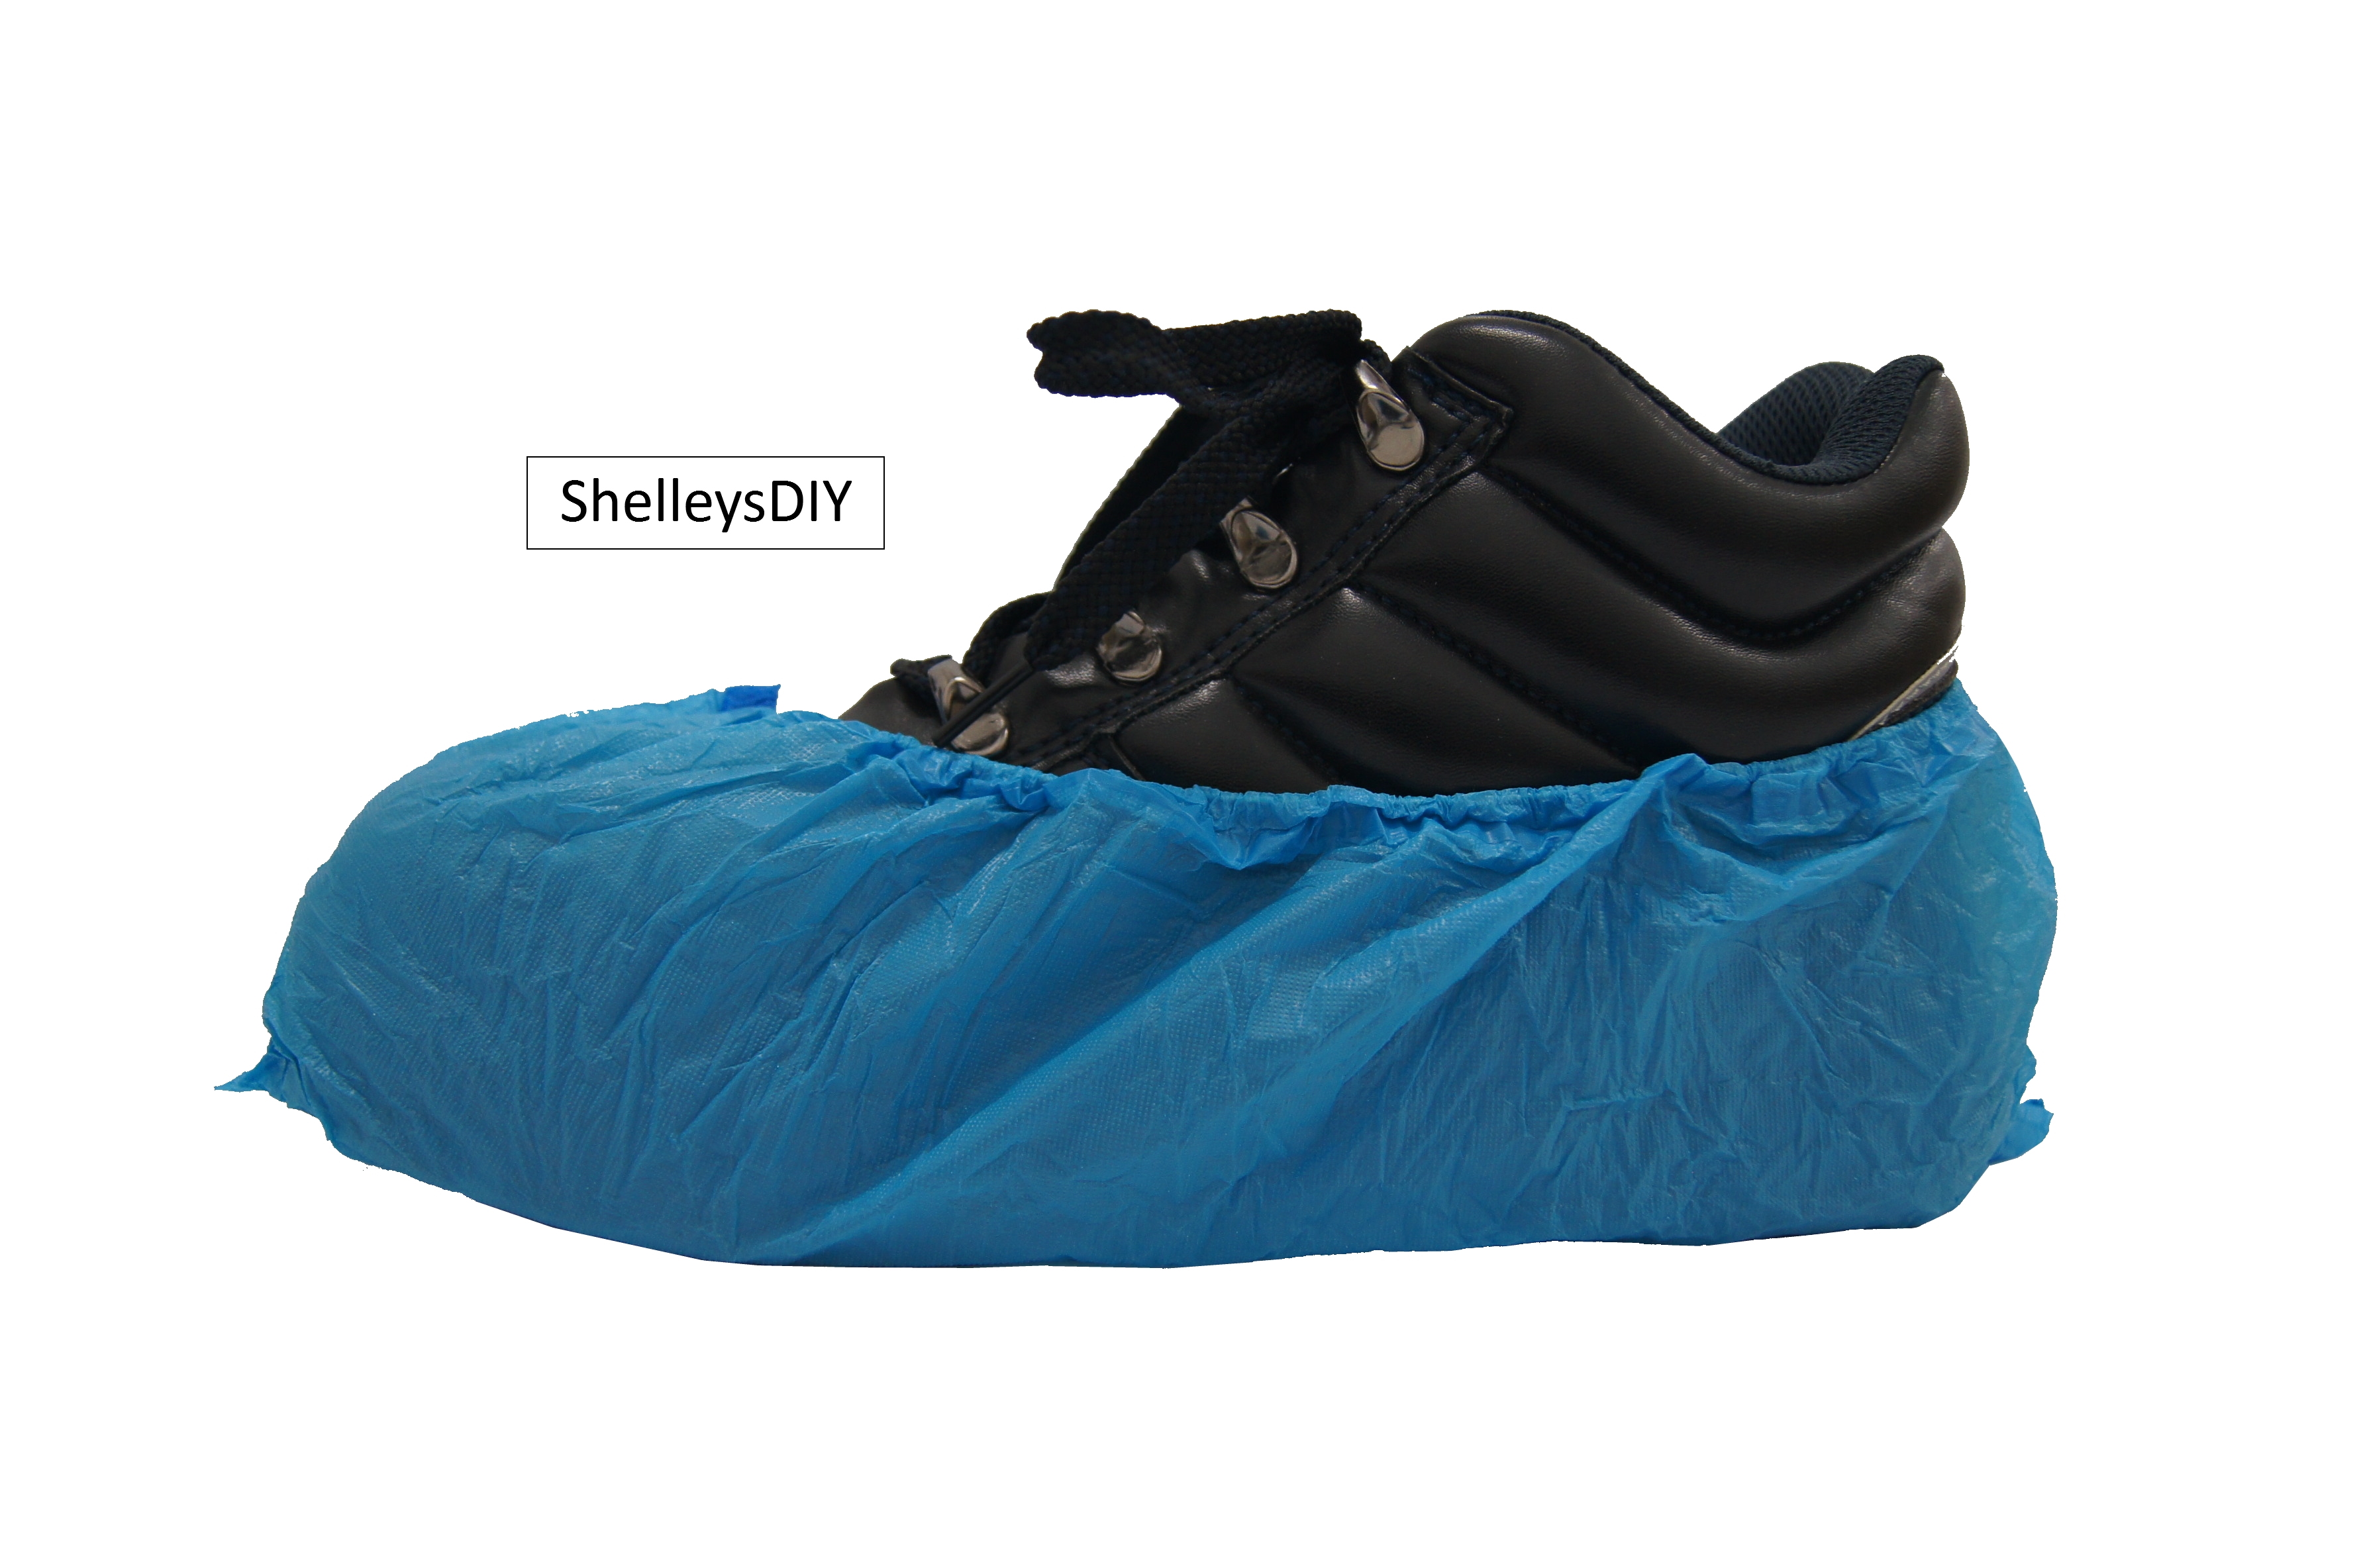 diy waterproof shoe covers